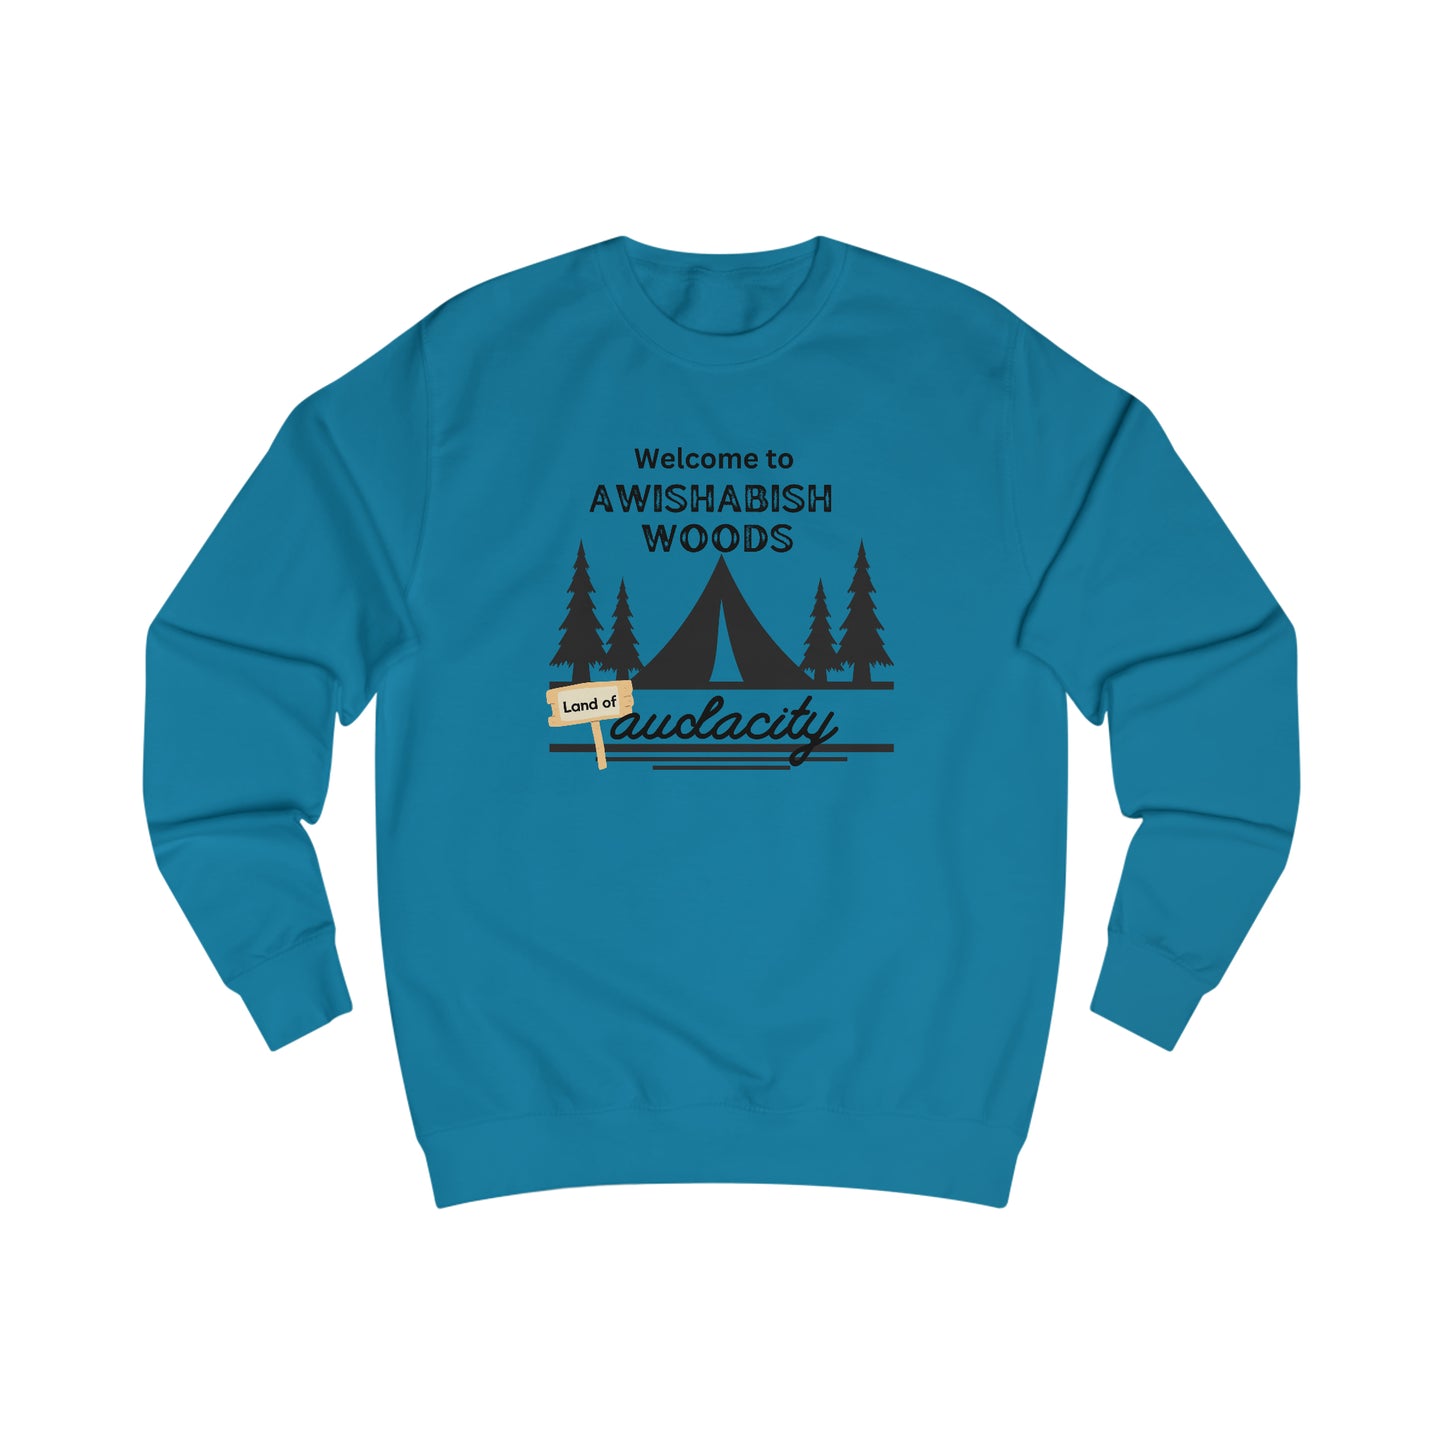 "Awishabish woods" sassy sweatshirt - Sassy quote shirt - bestie birthday gift